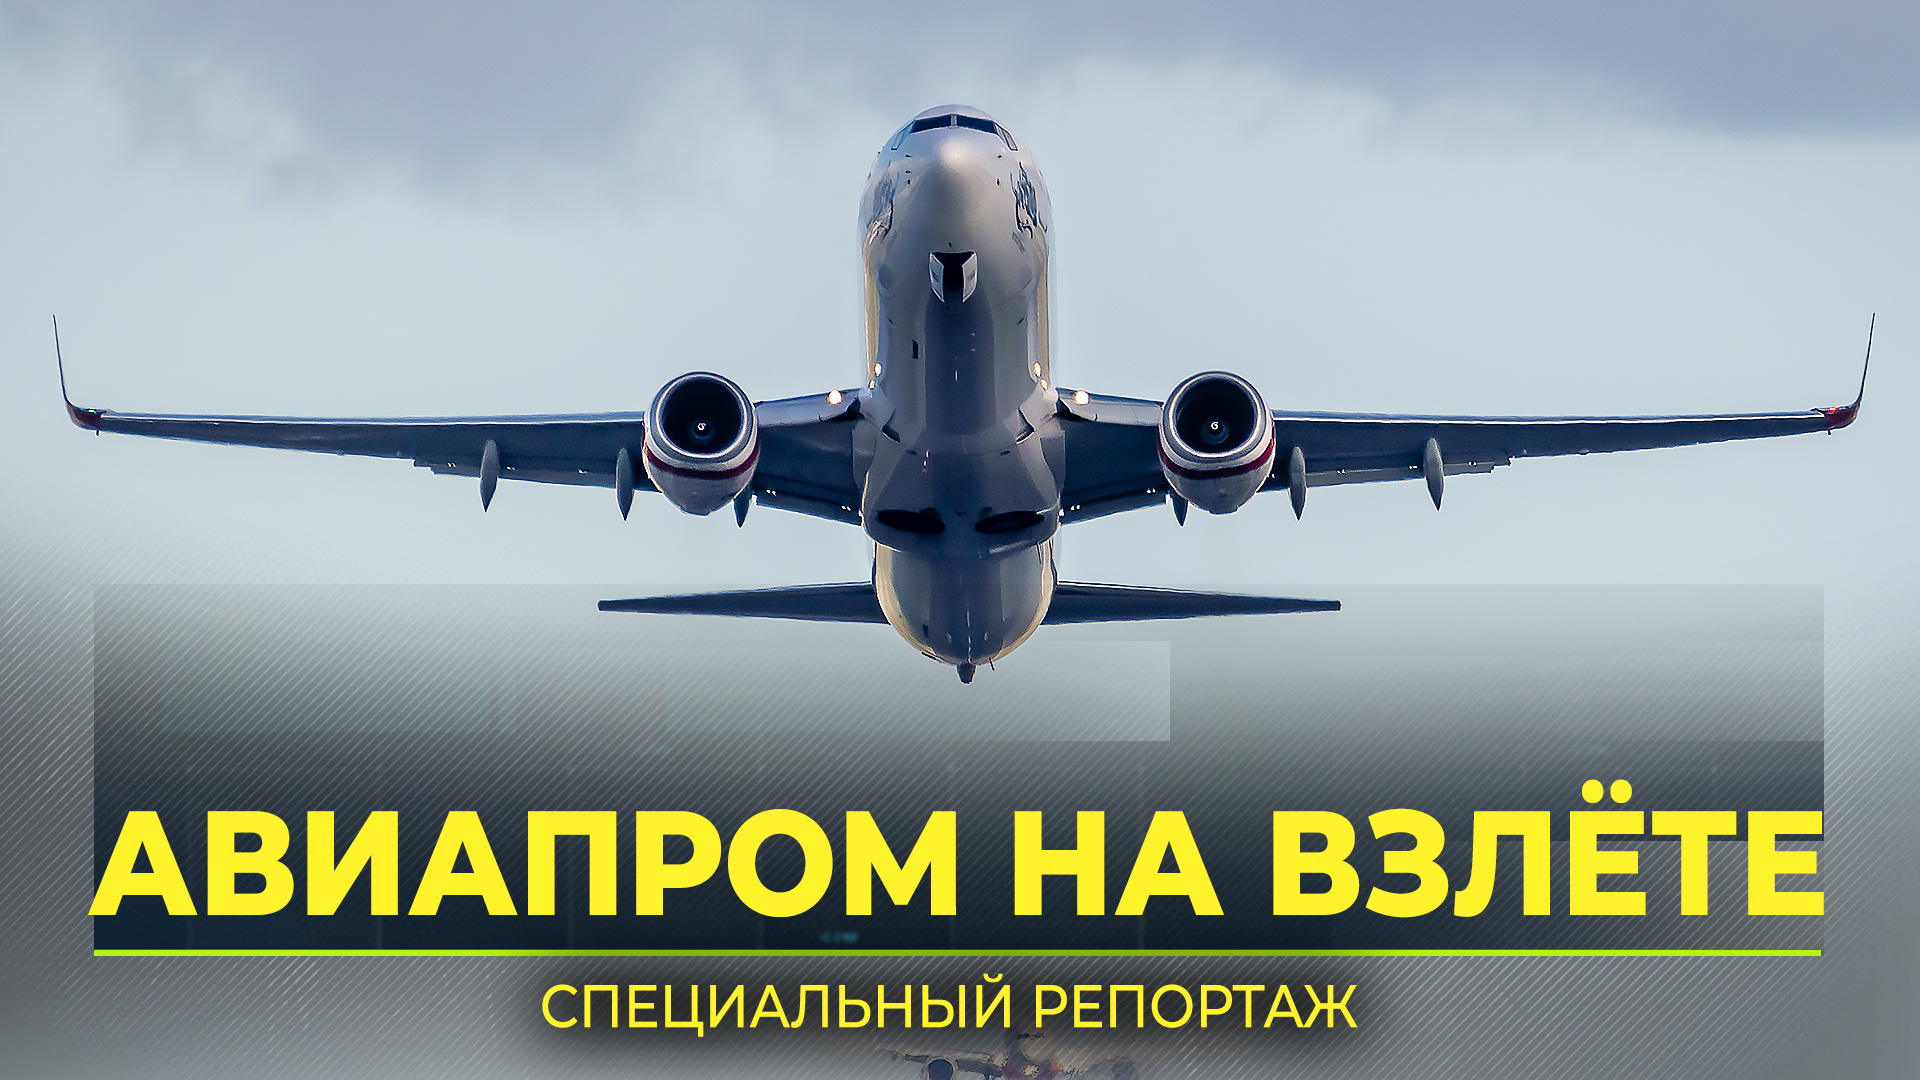 Как будет развиваться гражданская авиация России, обсудили на форуме в Москве